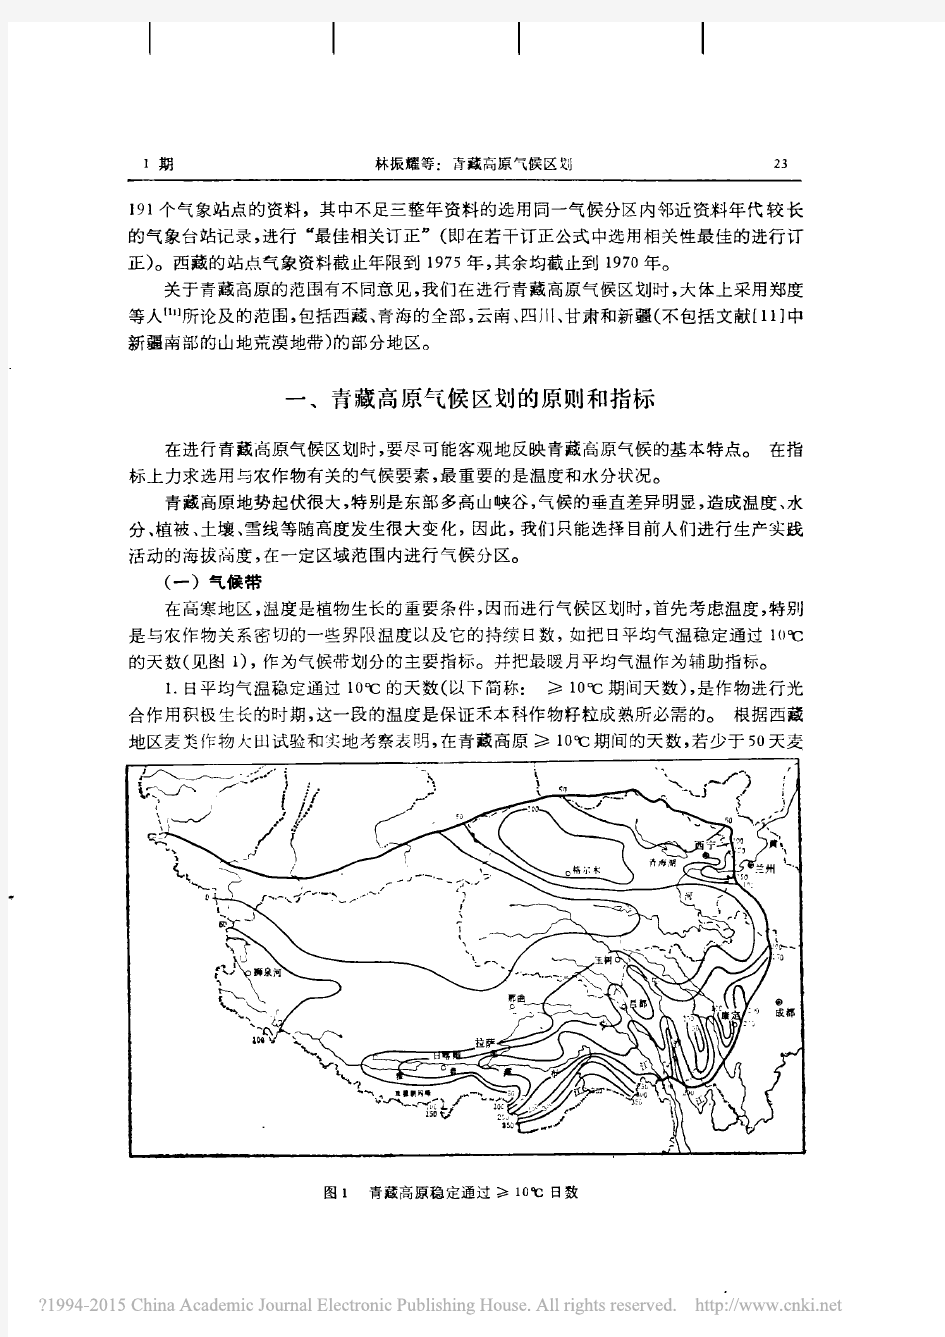 青藏高原气候区划